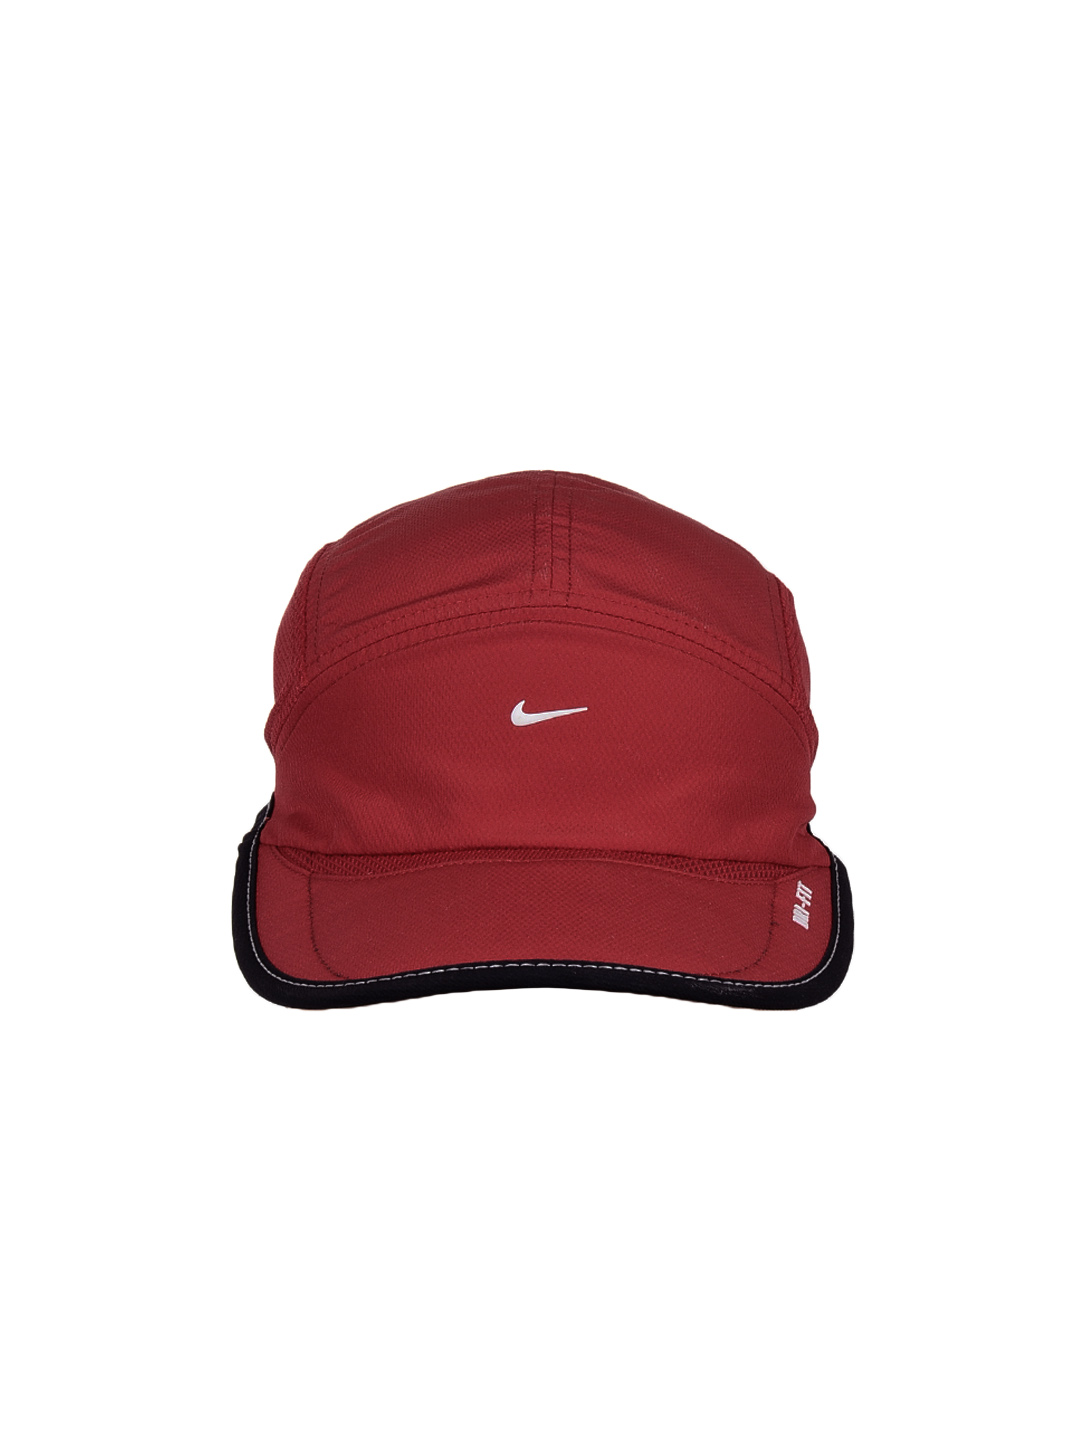 A Red Cap